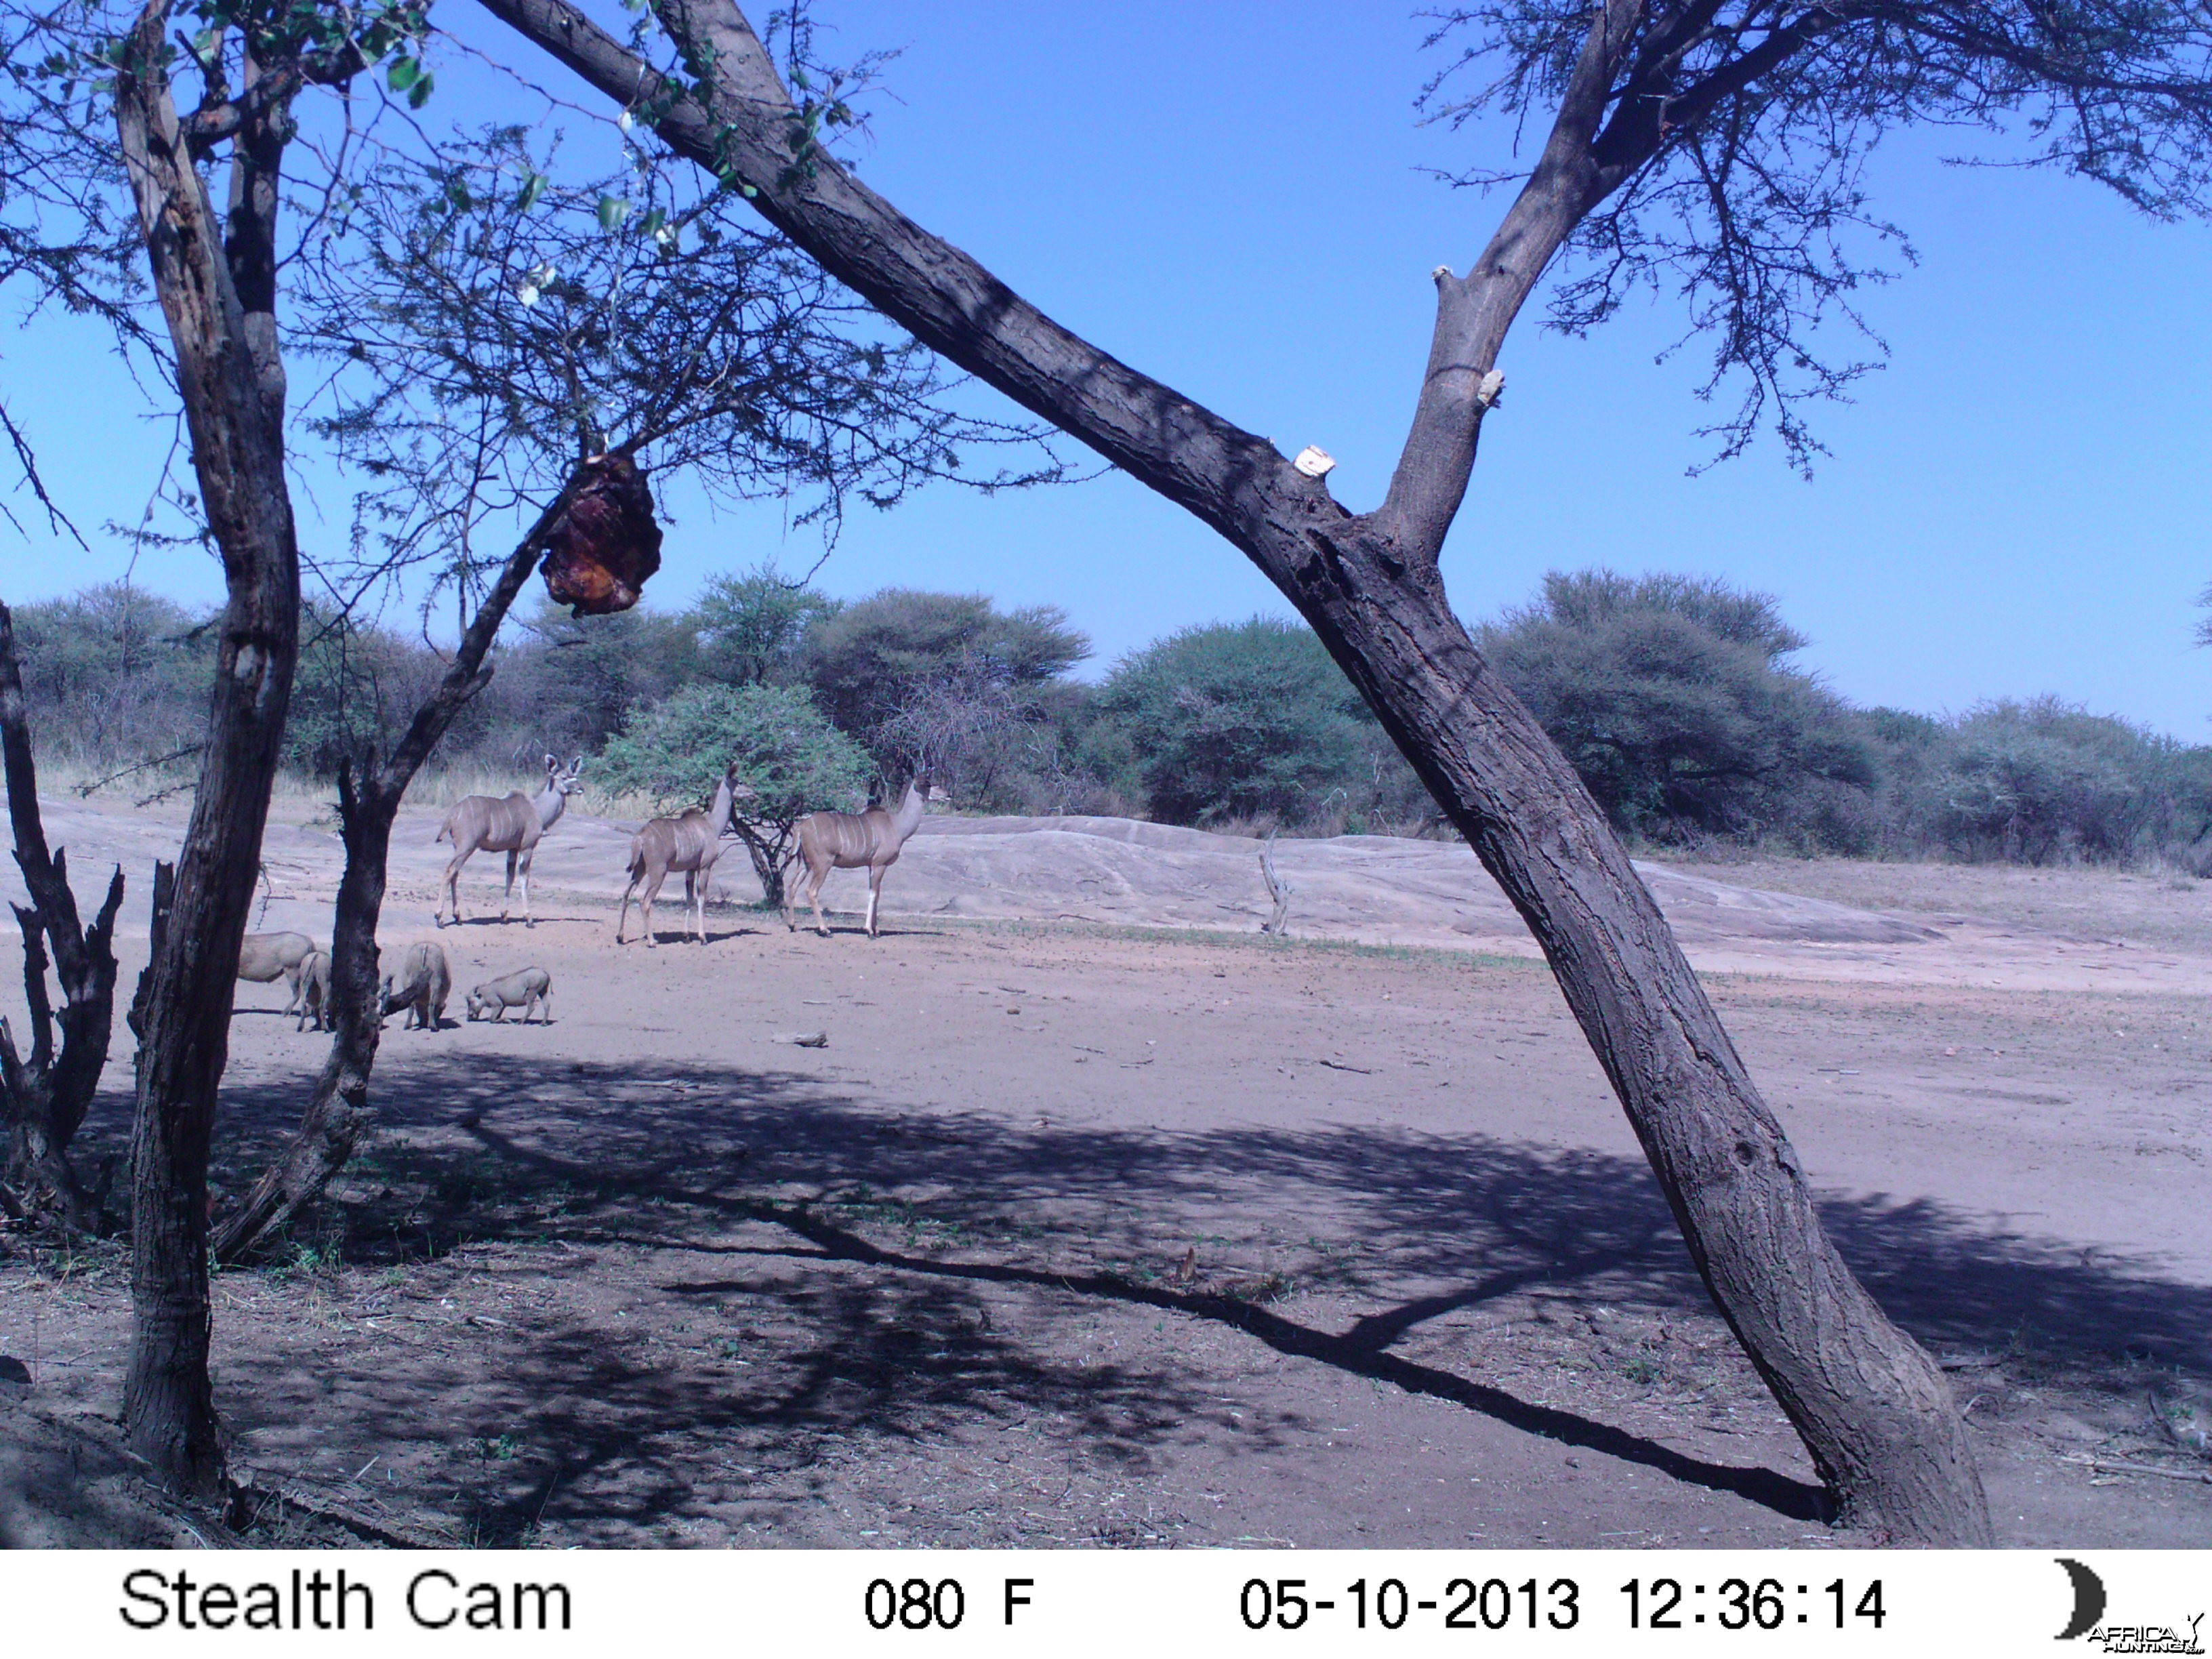 Greater Kudu Trail Camera